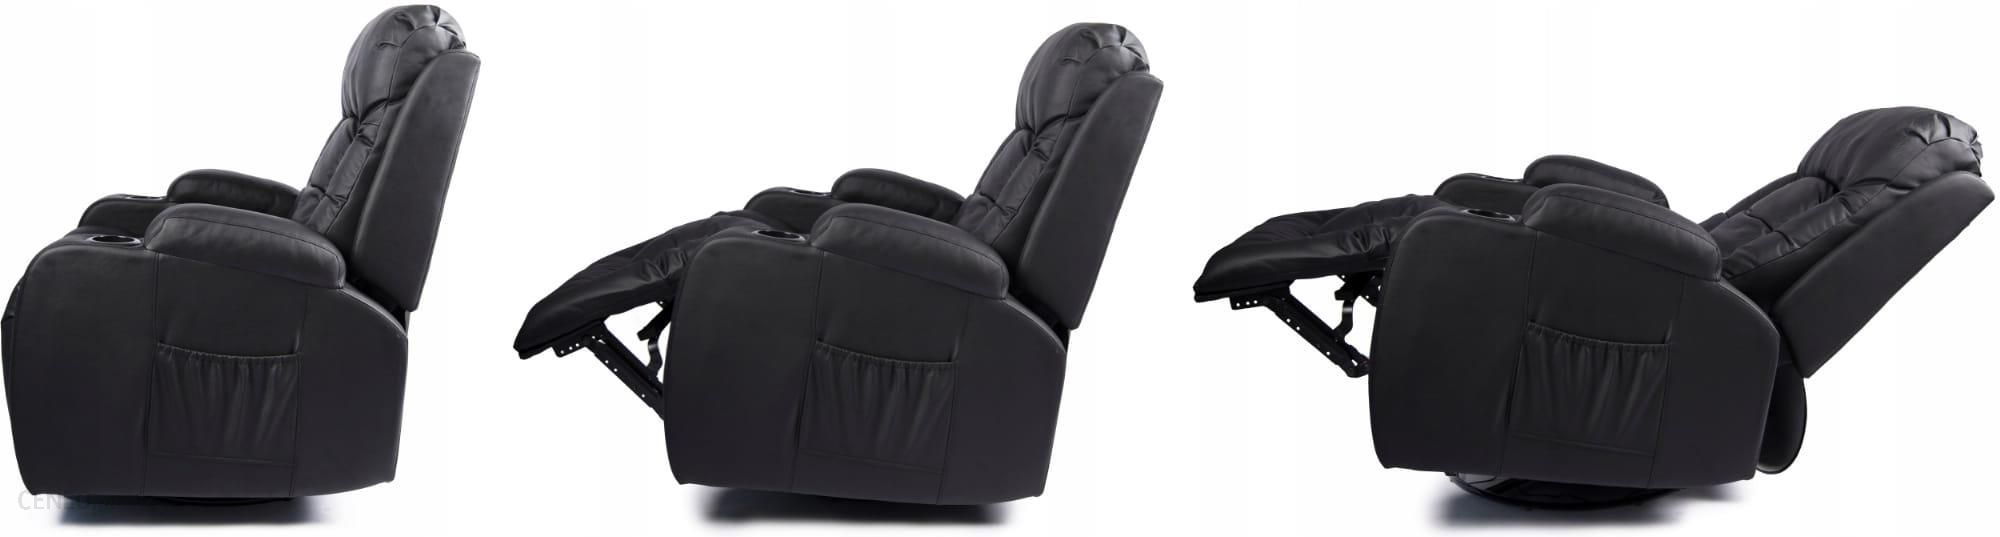 Mebel Elite Fotel Rozkładany Z Funkcją Masażu Box Czarny